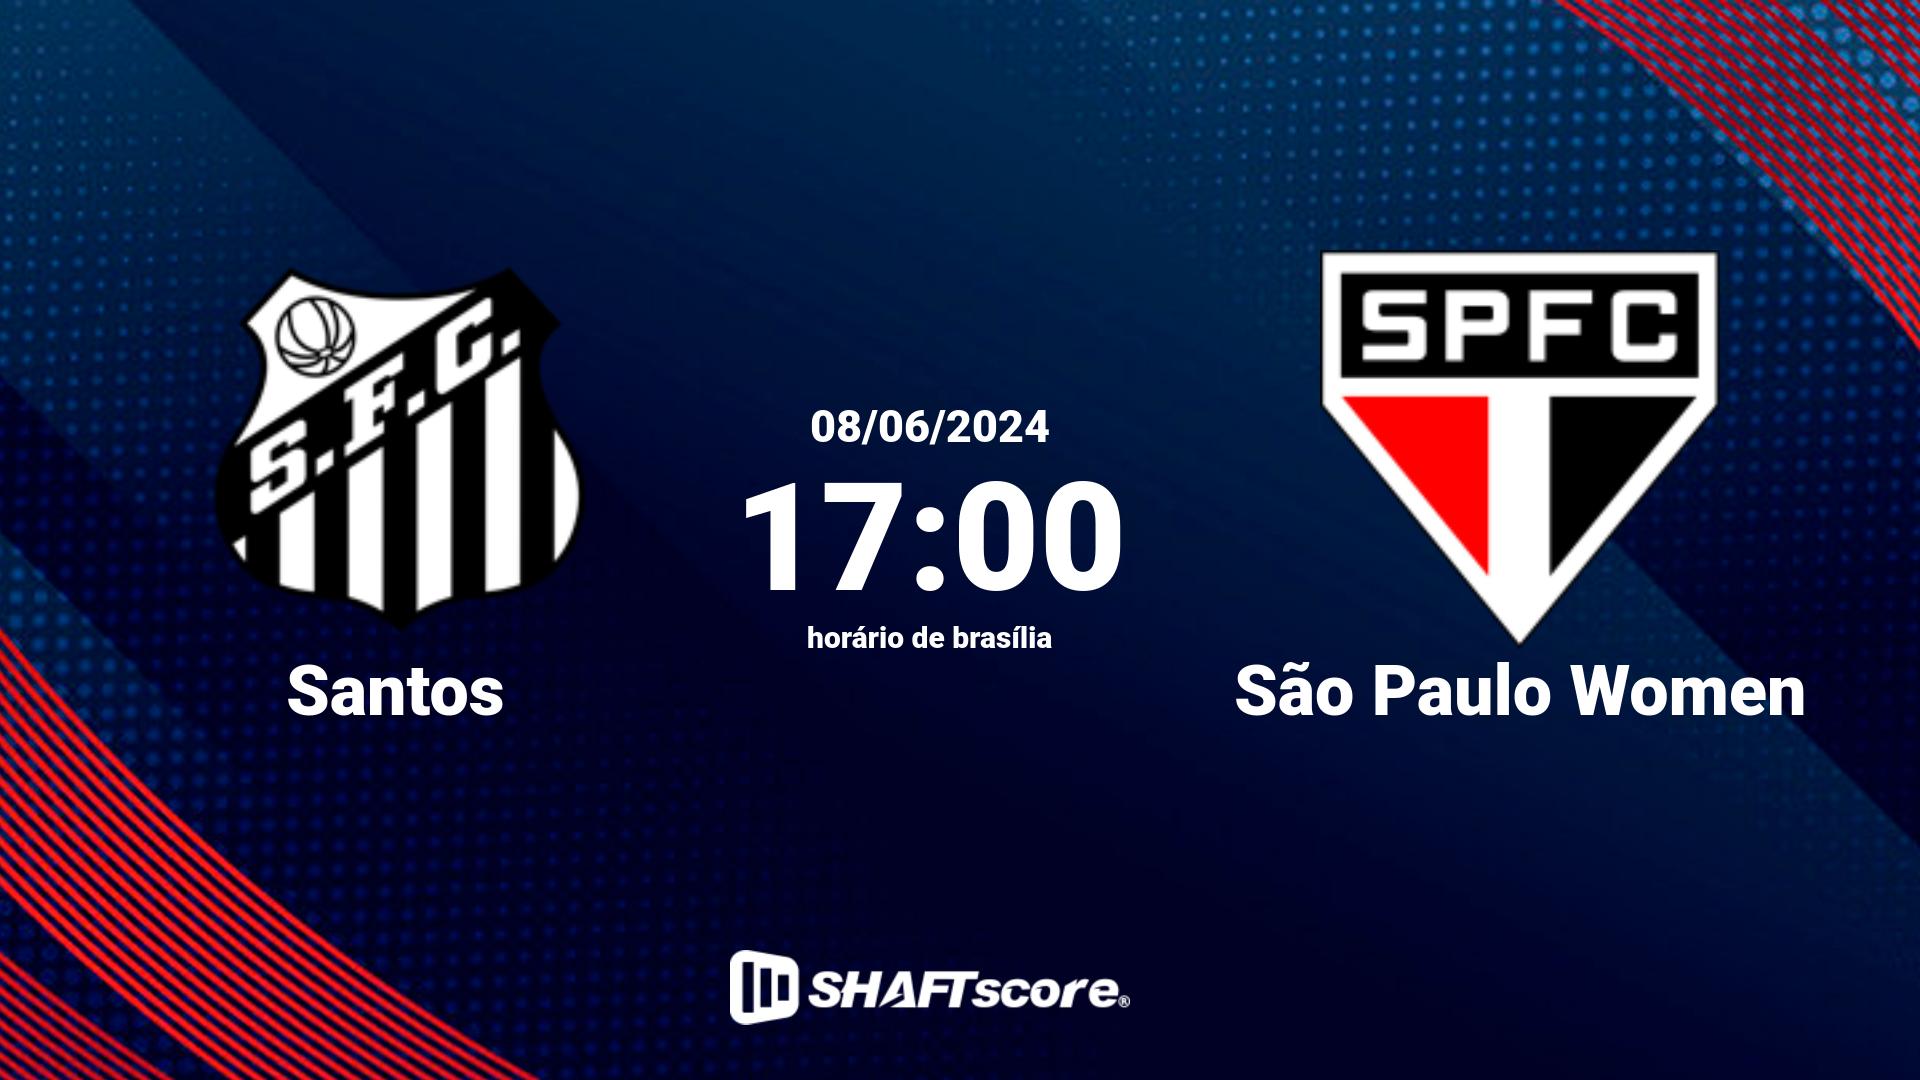 Estatísticas do jogo Santos vs São Paulo Women 08.06 21:00